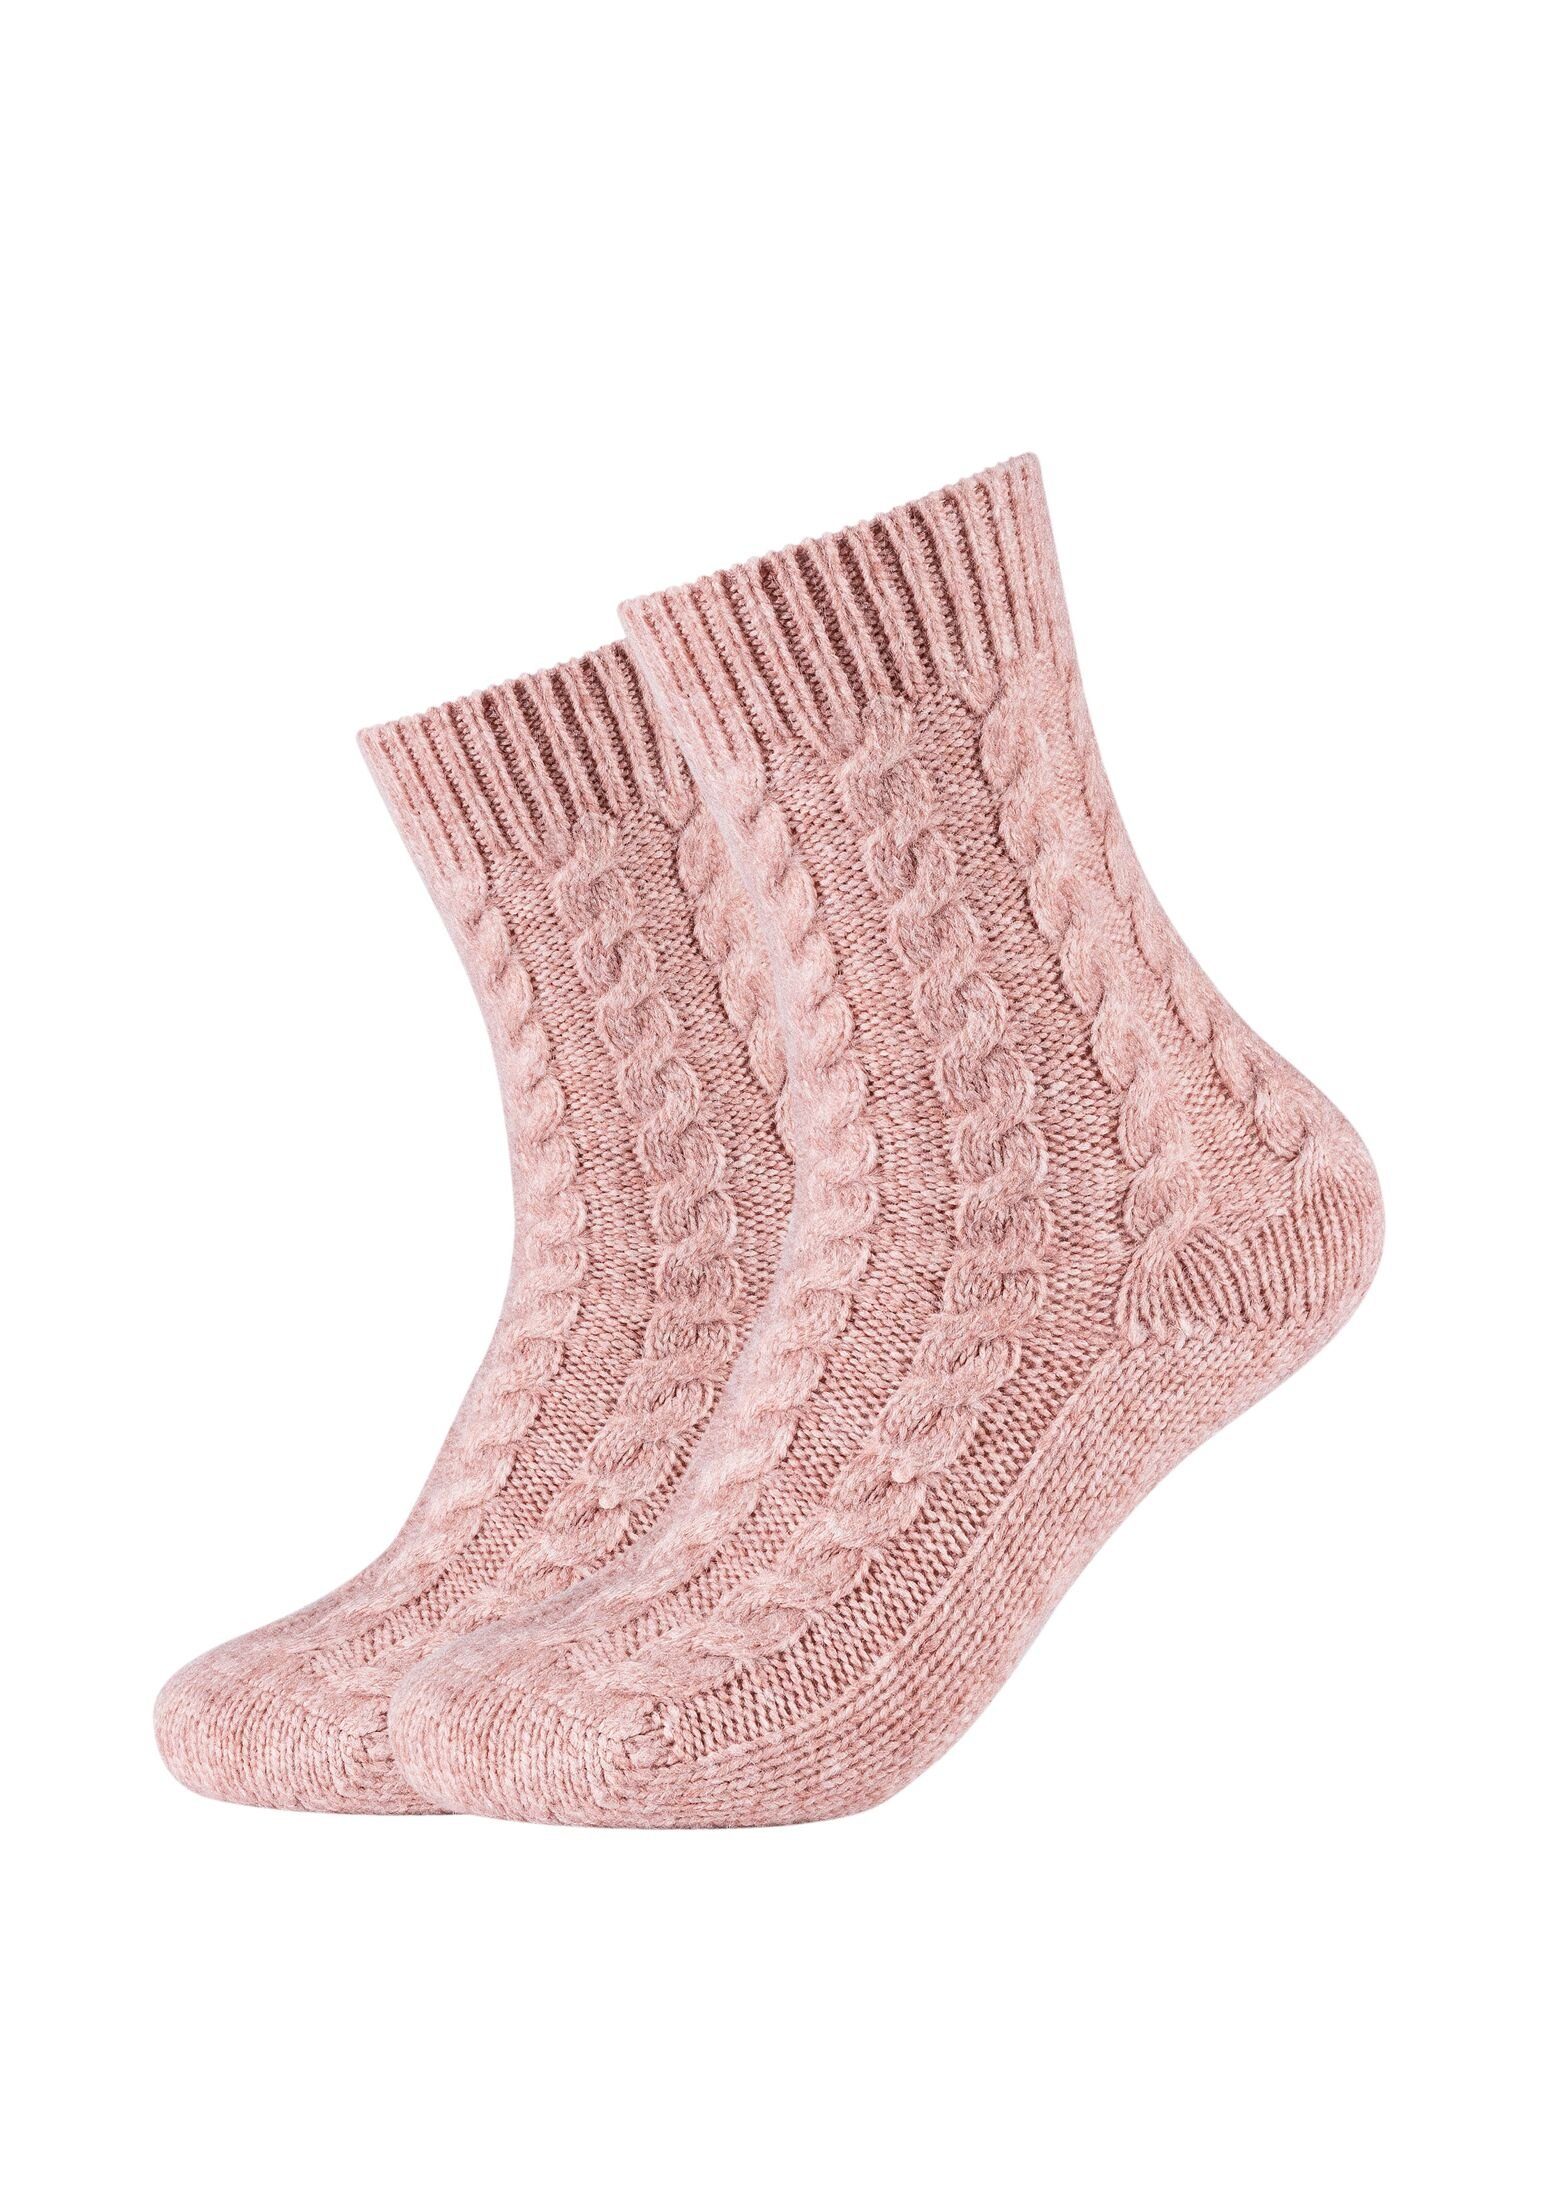 Camano Socken Socken Damen Kuschelsocken rose Warm Lang Cosy dusty Flauschig Zopfmuster